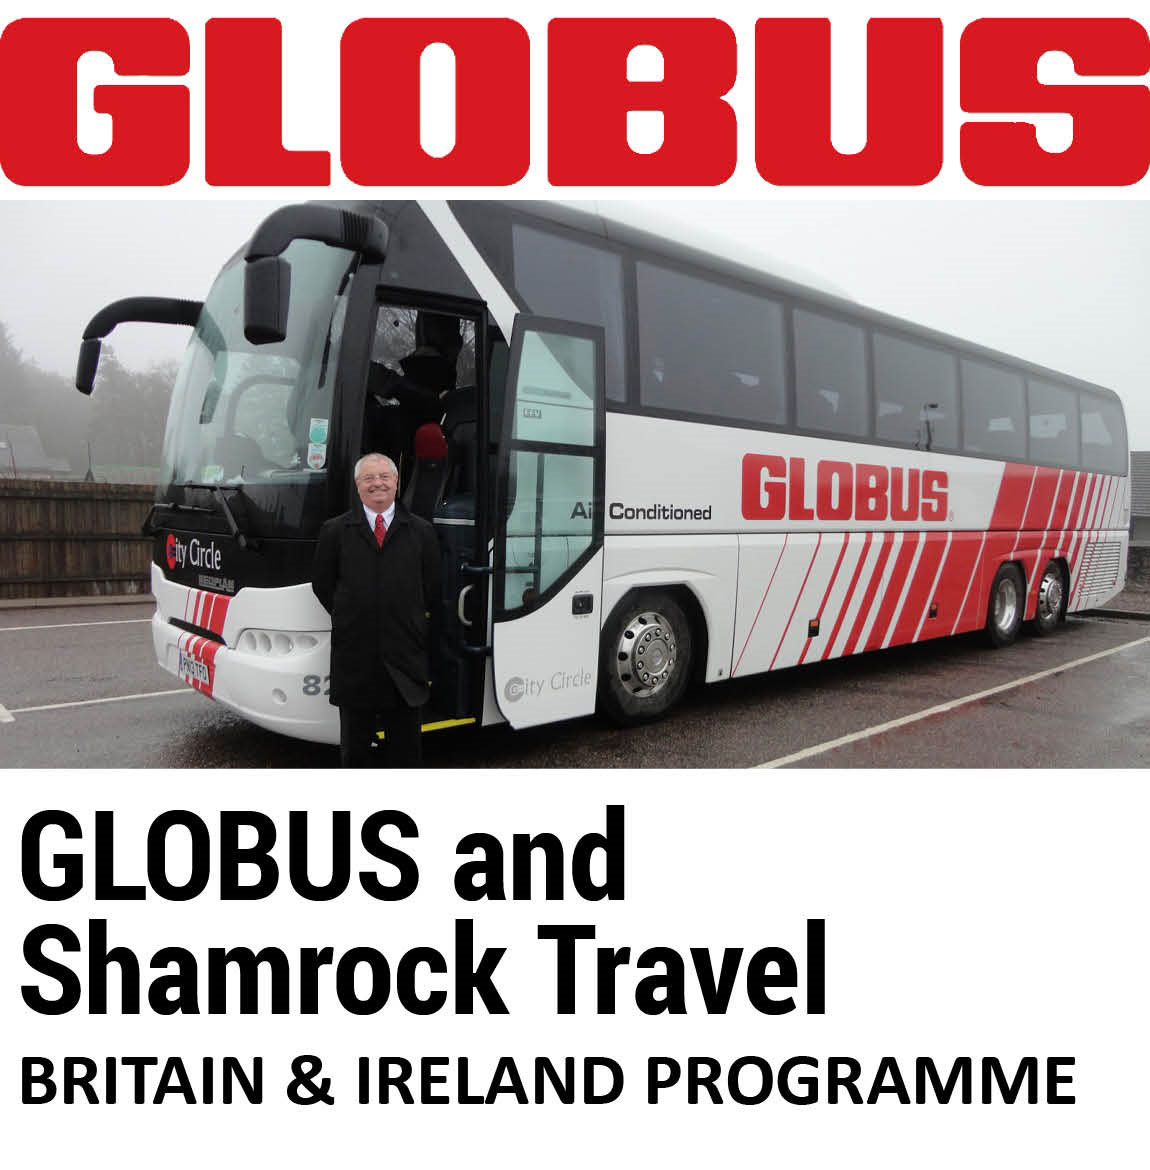 Globus-Travel-Bus